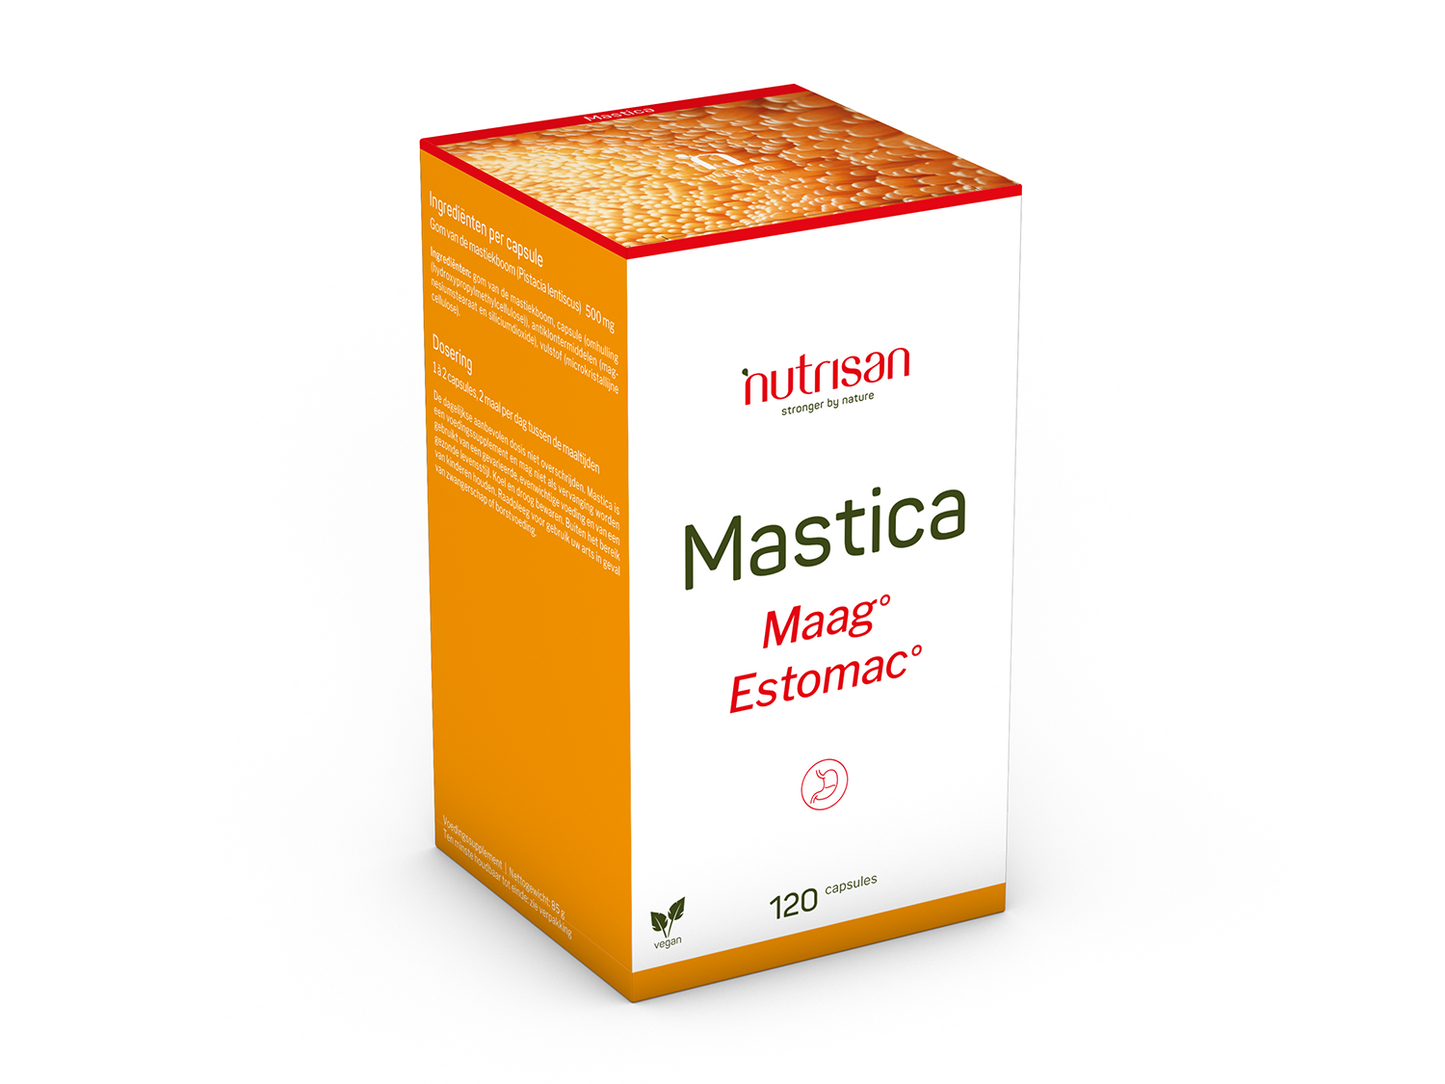 Nutrisan Mastica - 120 capsules - Supplement voor maagcomfort